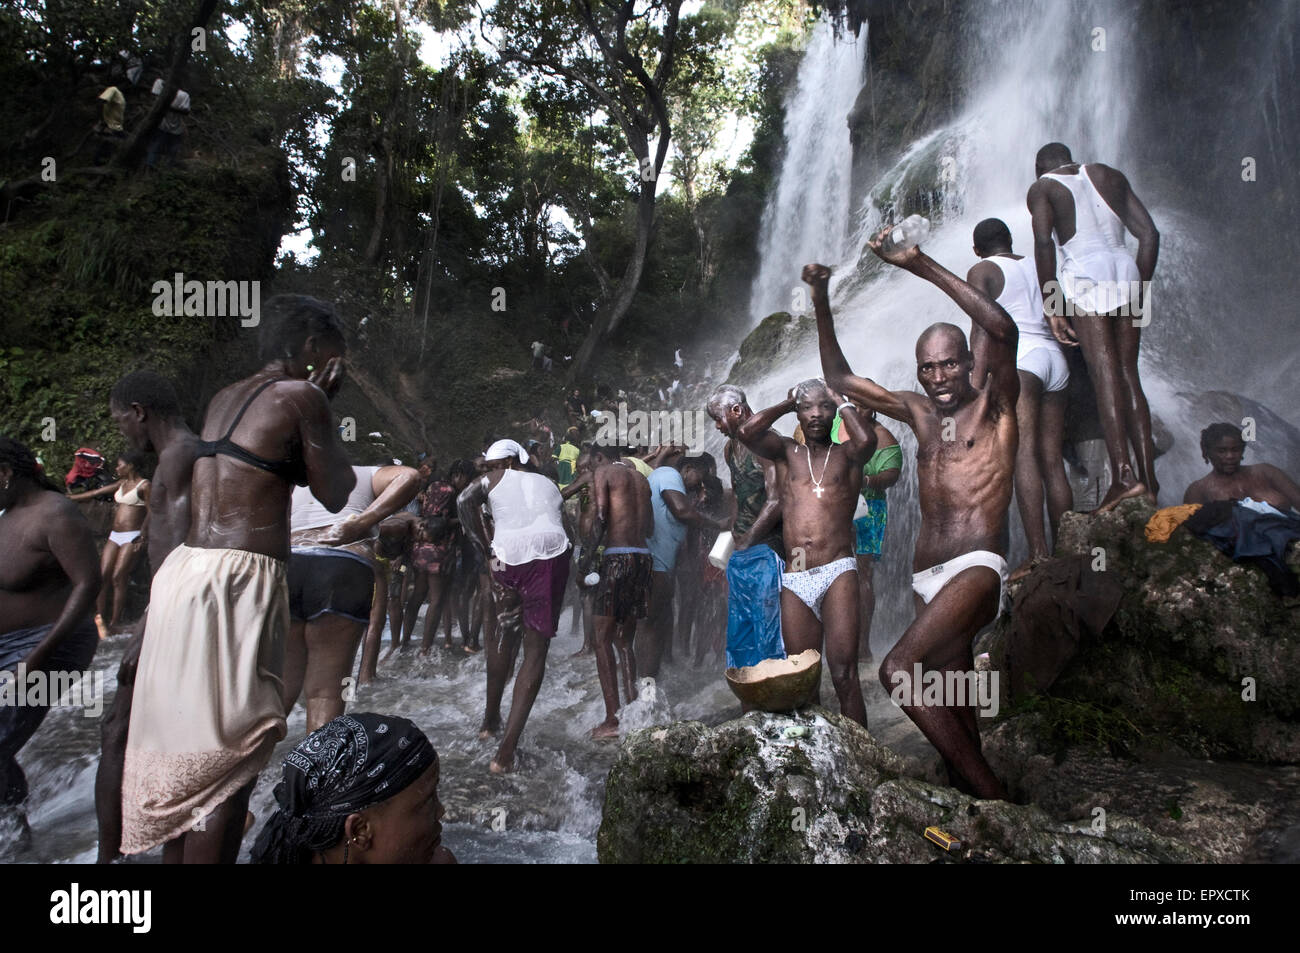 Voodoo Festival di Saut d'Eau, Haiti. La scalata verso la cascata del Saut d'eau, una altezza di 30 metri, non è facile. Come lei, Foto Stock